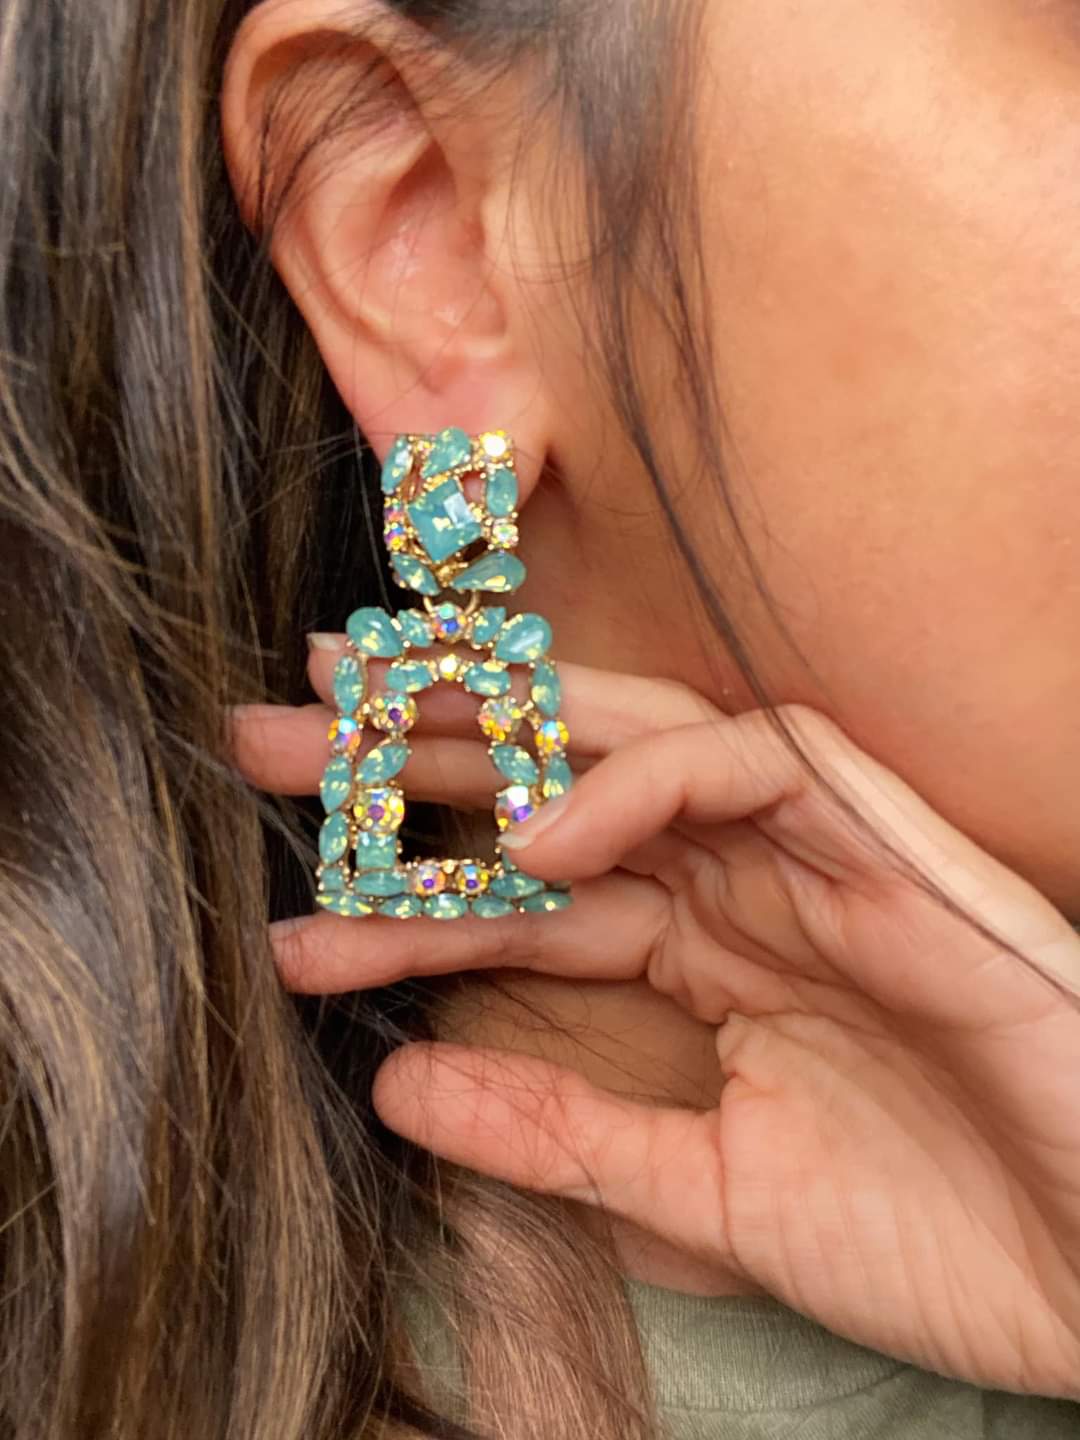 The Jade Vintage Jewel Earrings